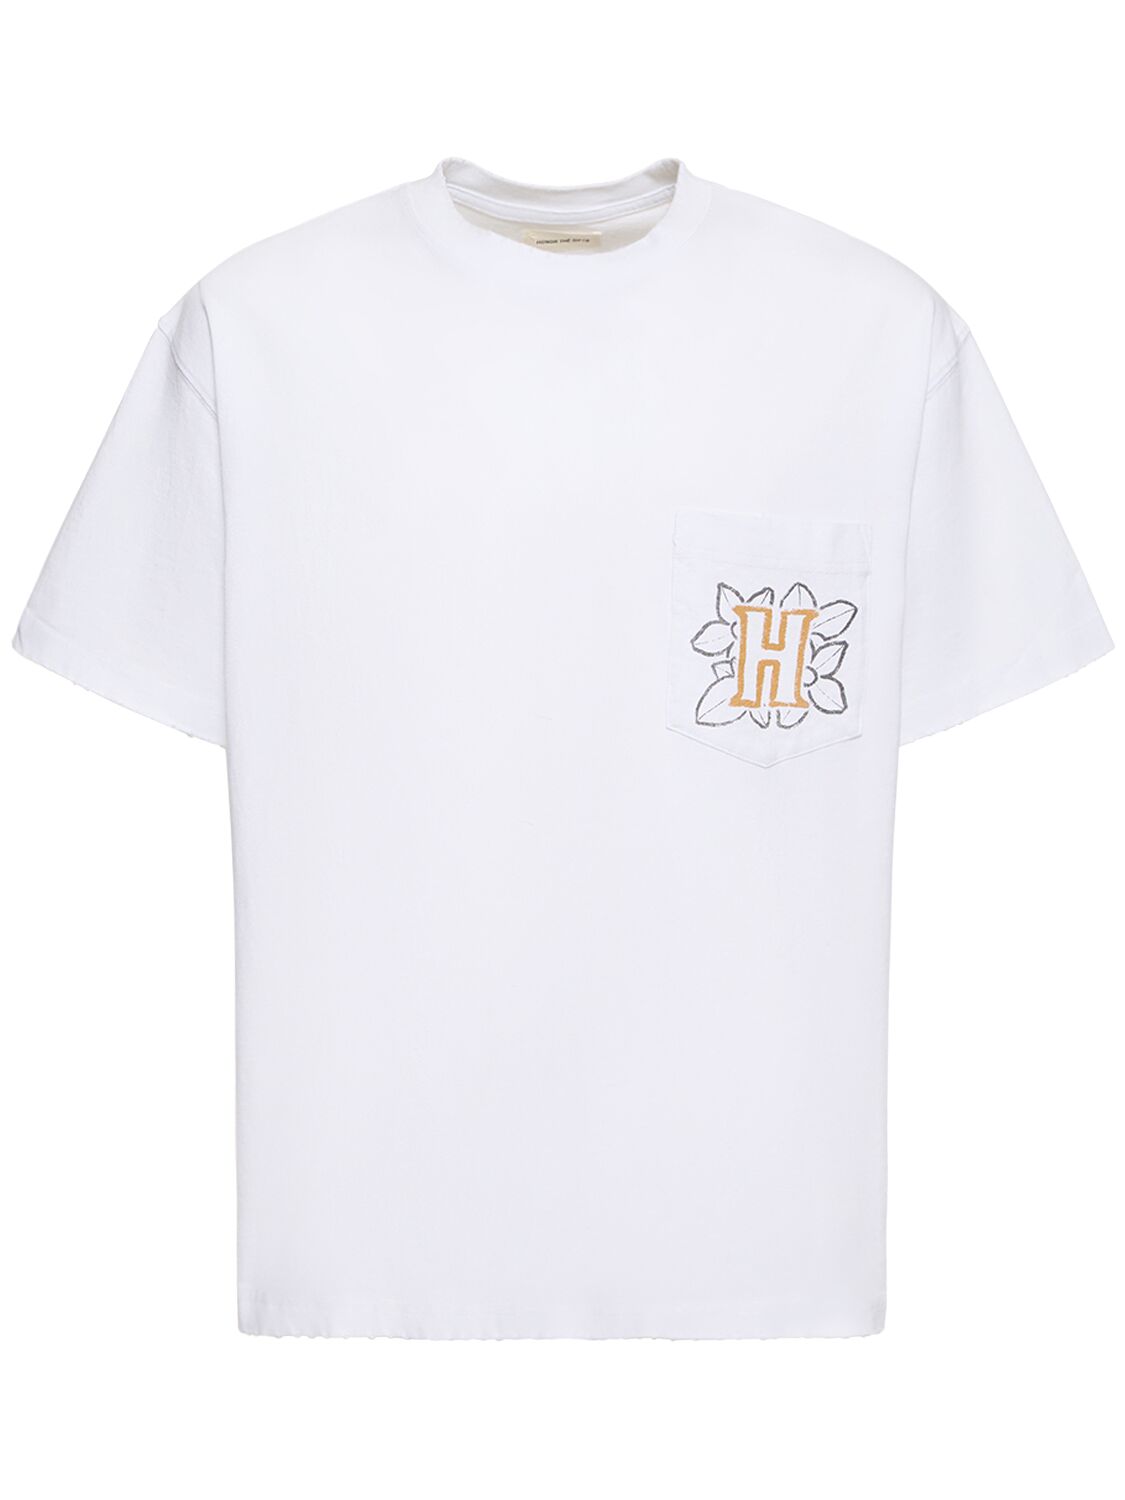 T-shirt En Jersey Avec Poche Fleurie B-summer - HONOR THE GIFT - Modalova